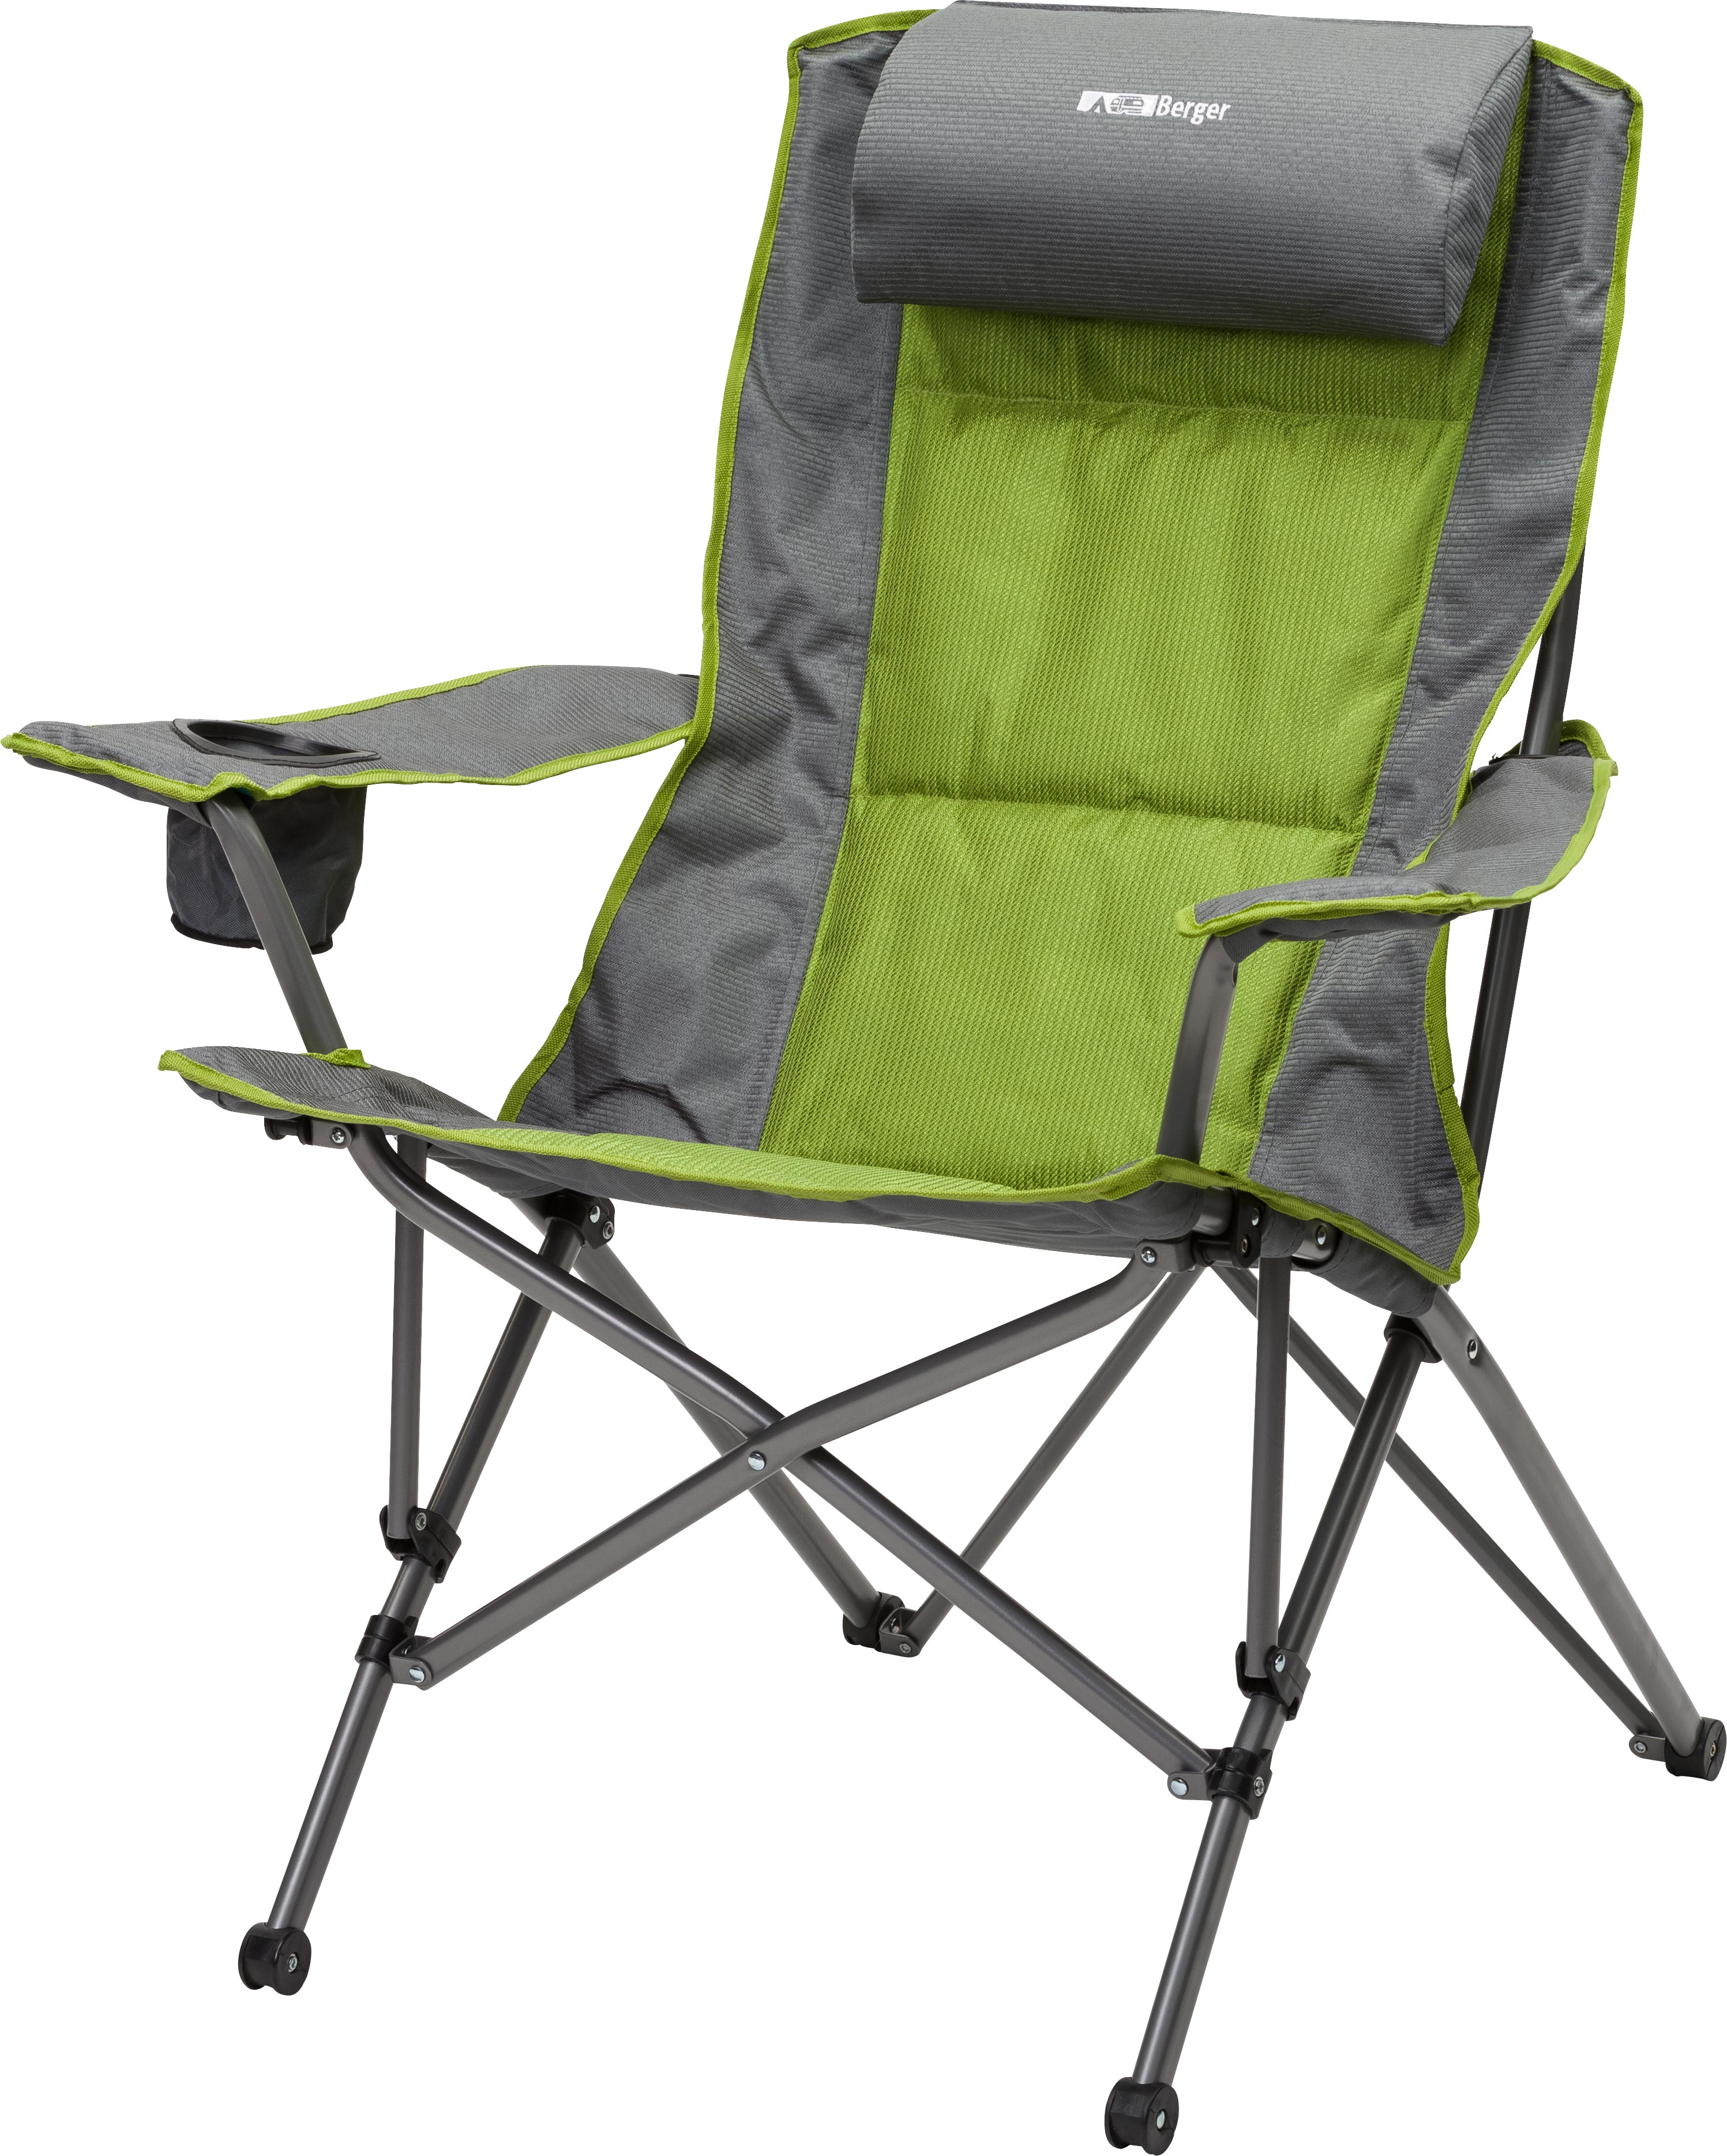 Складной стул кресло. Складное кресло Frosinone Camping Active. Мебель для кемпинга Berger. Стул складной туристический JD-1005 33,5х27х35см. Blaupunkt стул туристический складной.